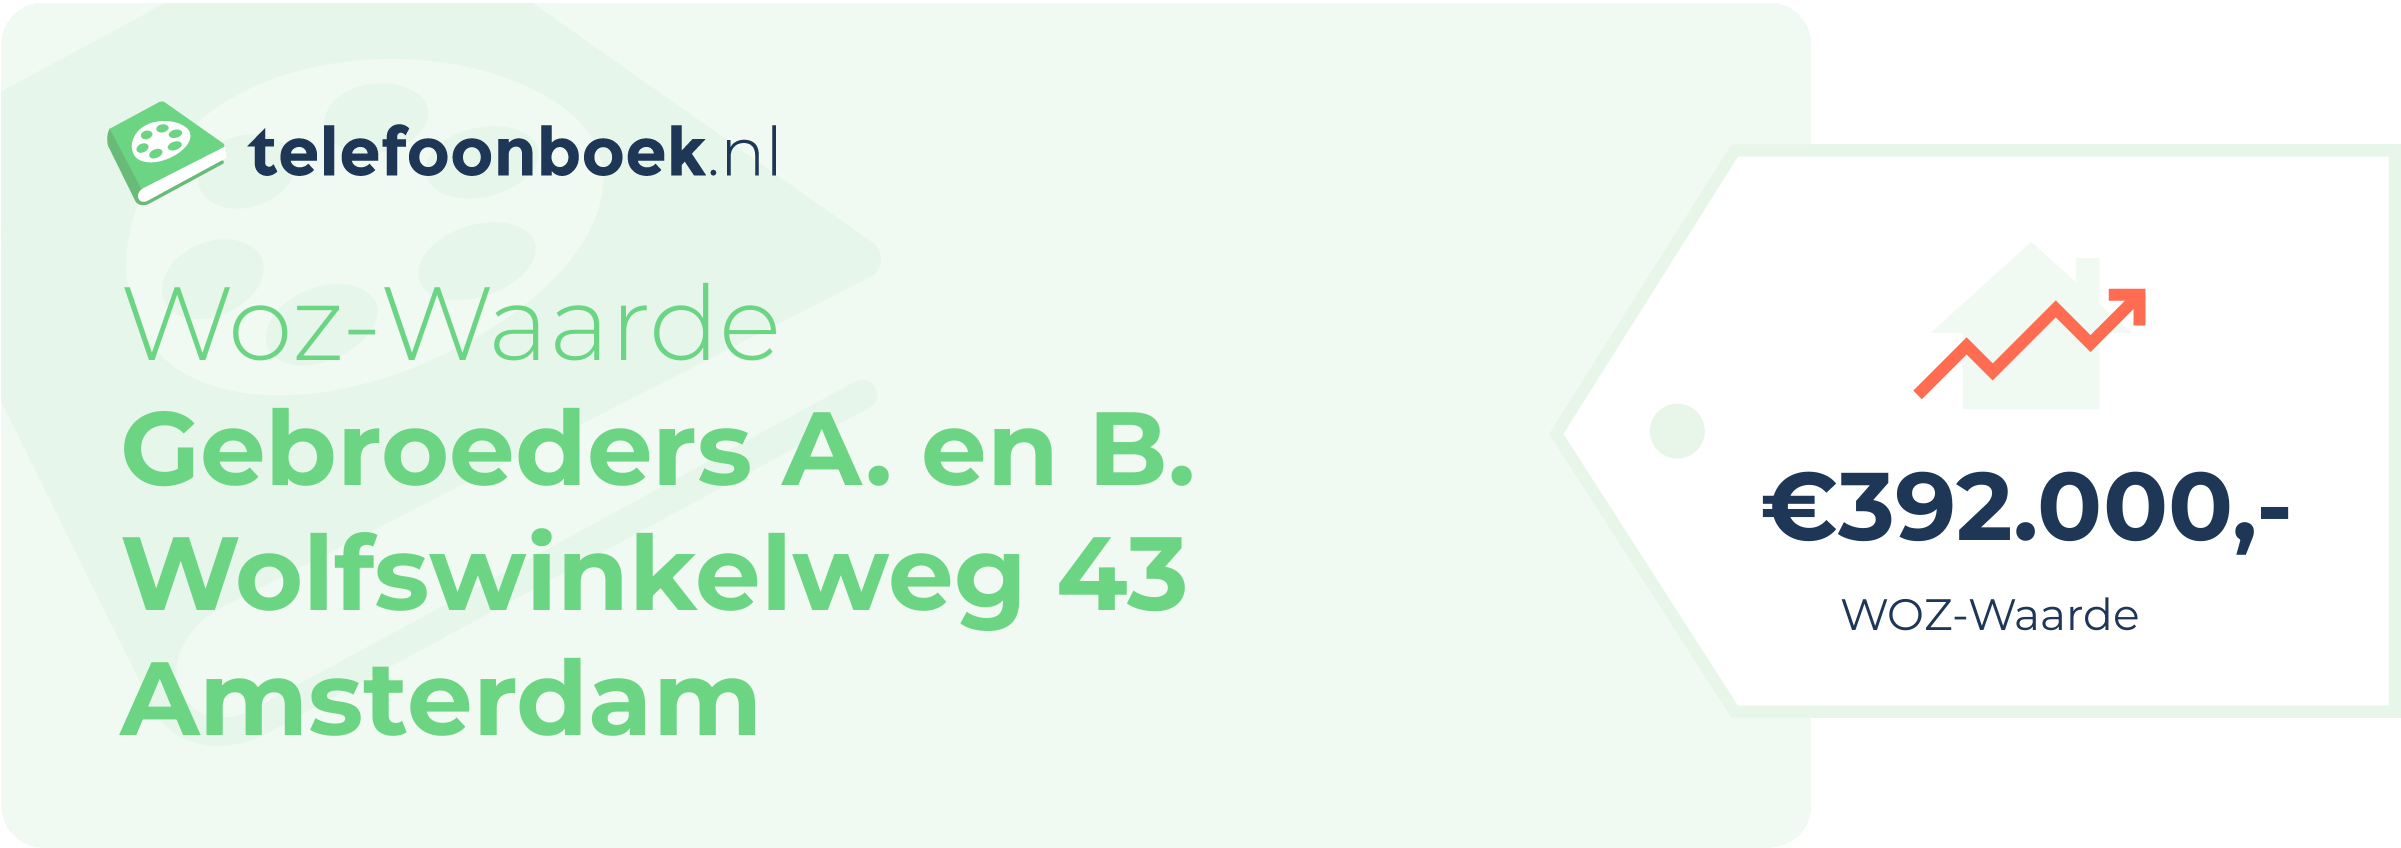 WOZ-waarde Gebroeders A. En B. Wolfswinkelweg 43 Amsterdam